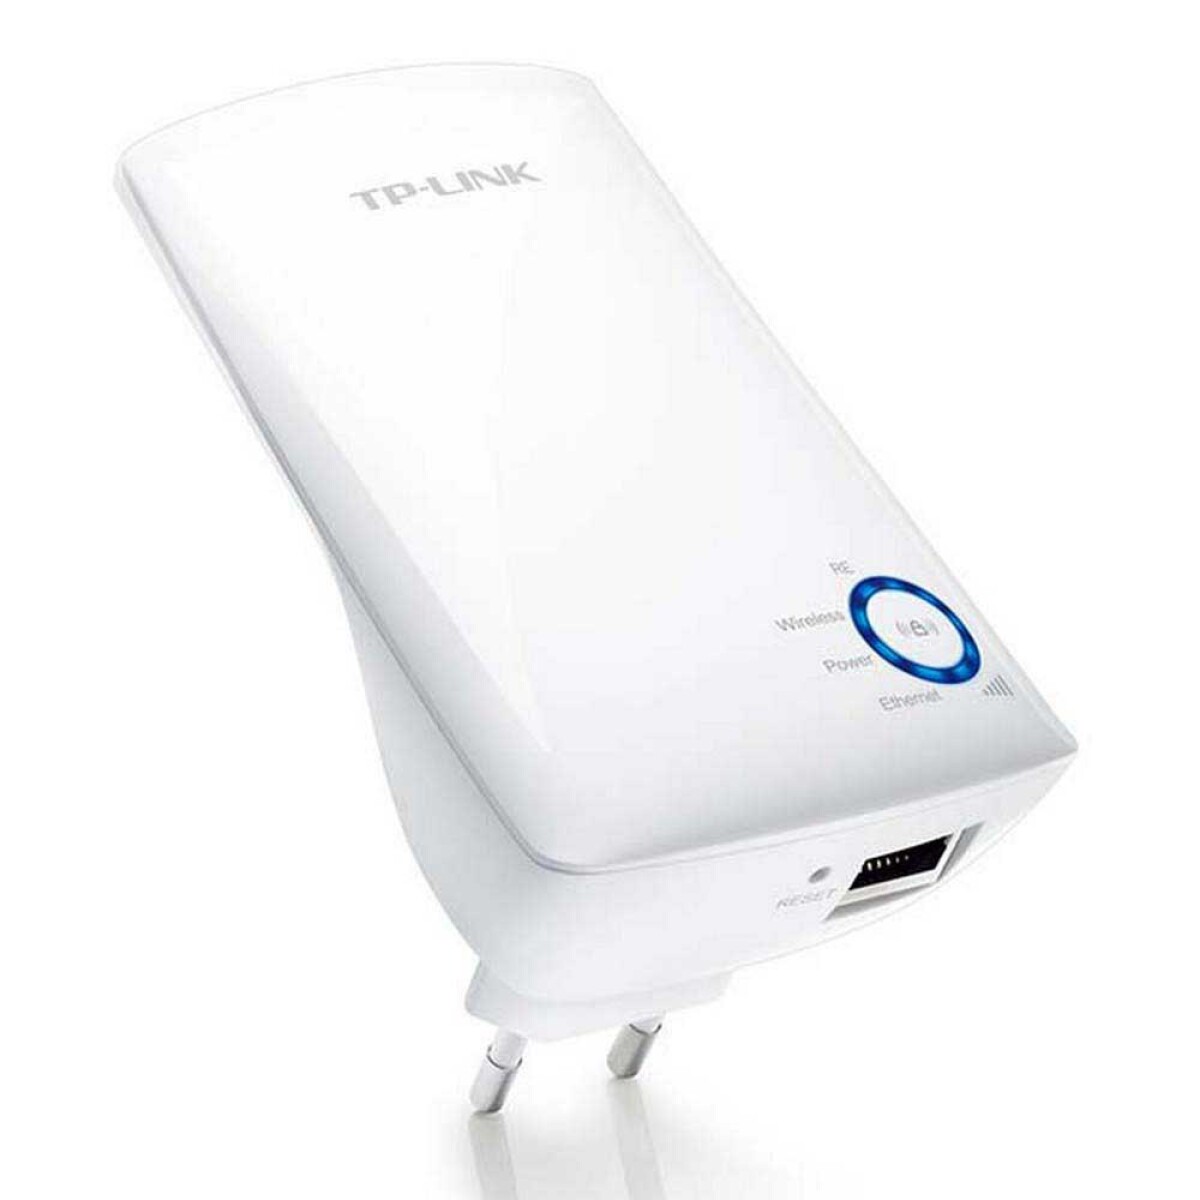 Wi-fi range extender tp-link n300 tl-wa850re 300mbps 2.4ghz White